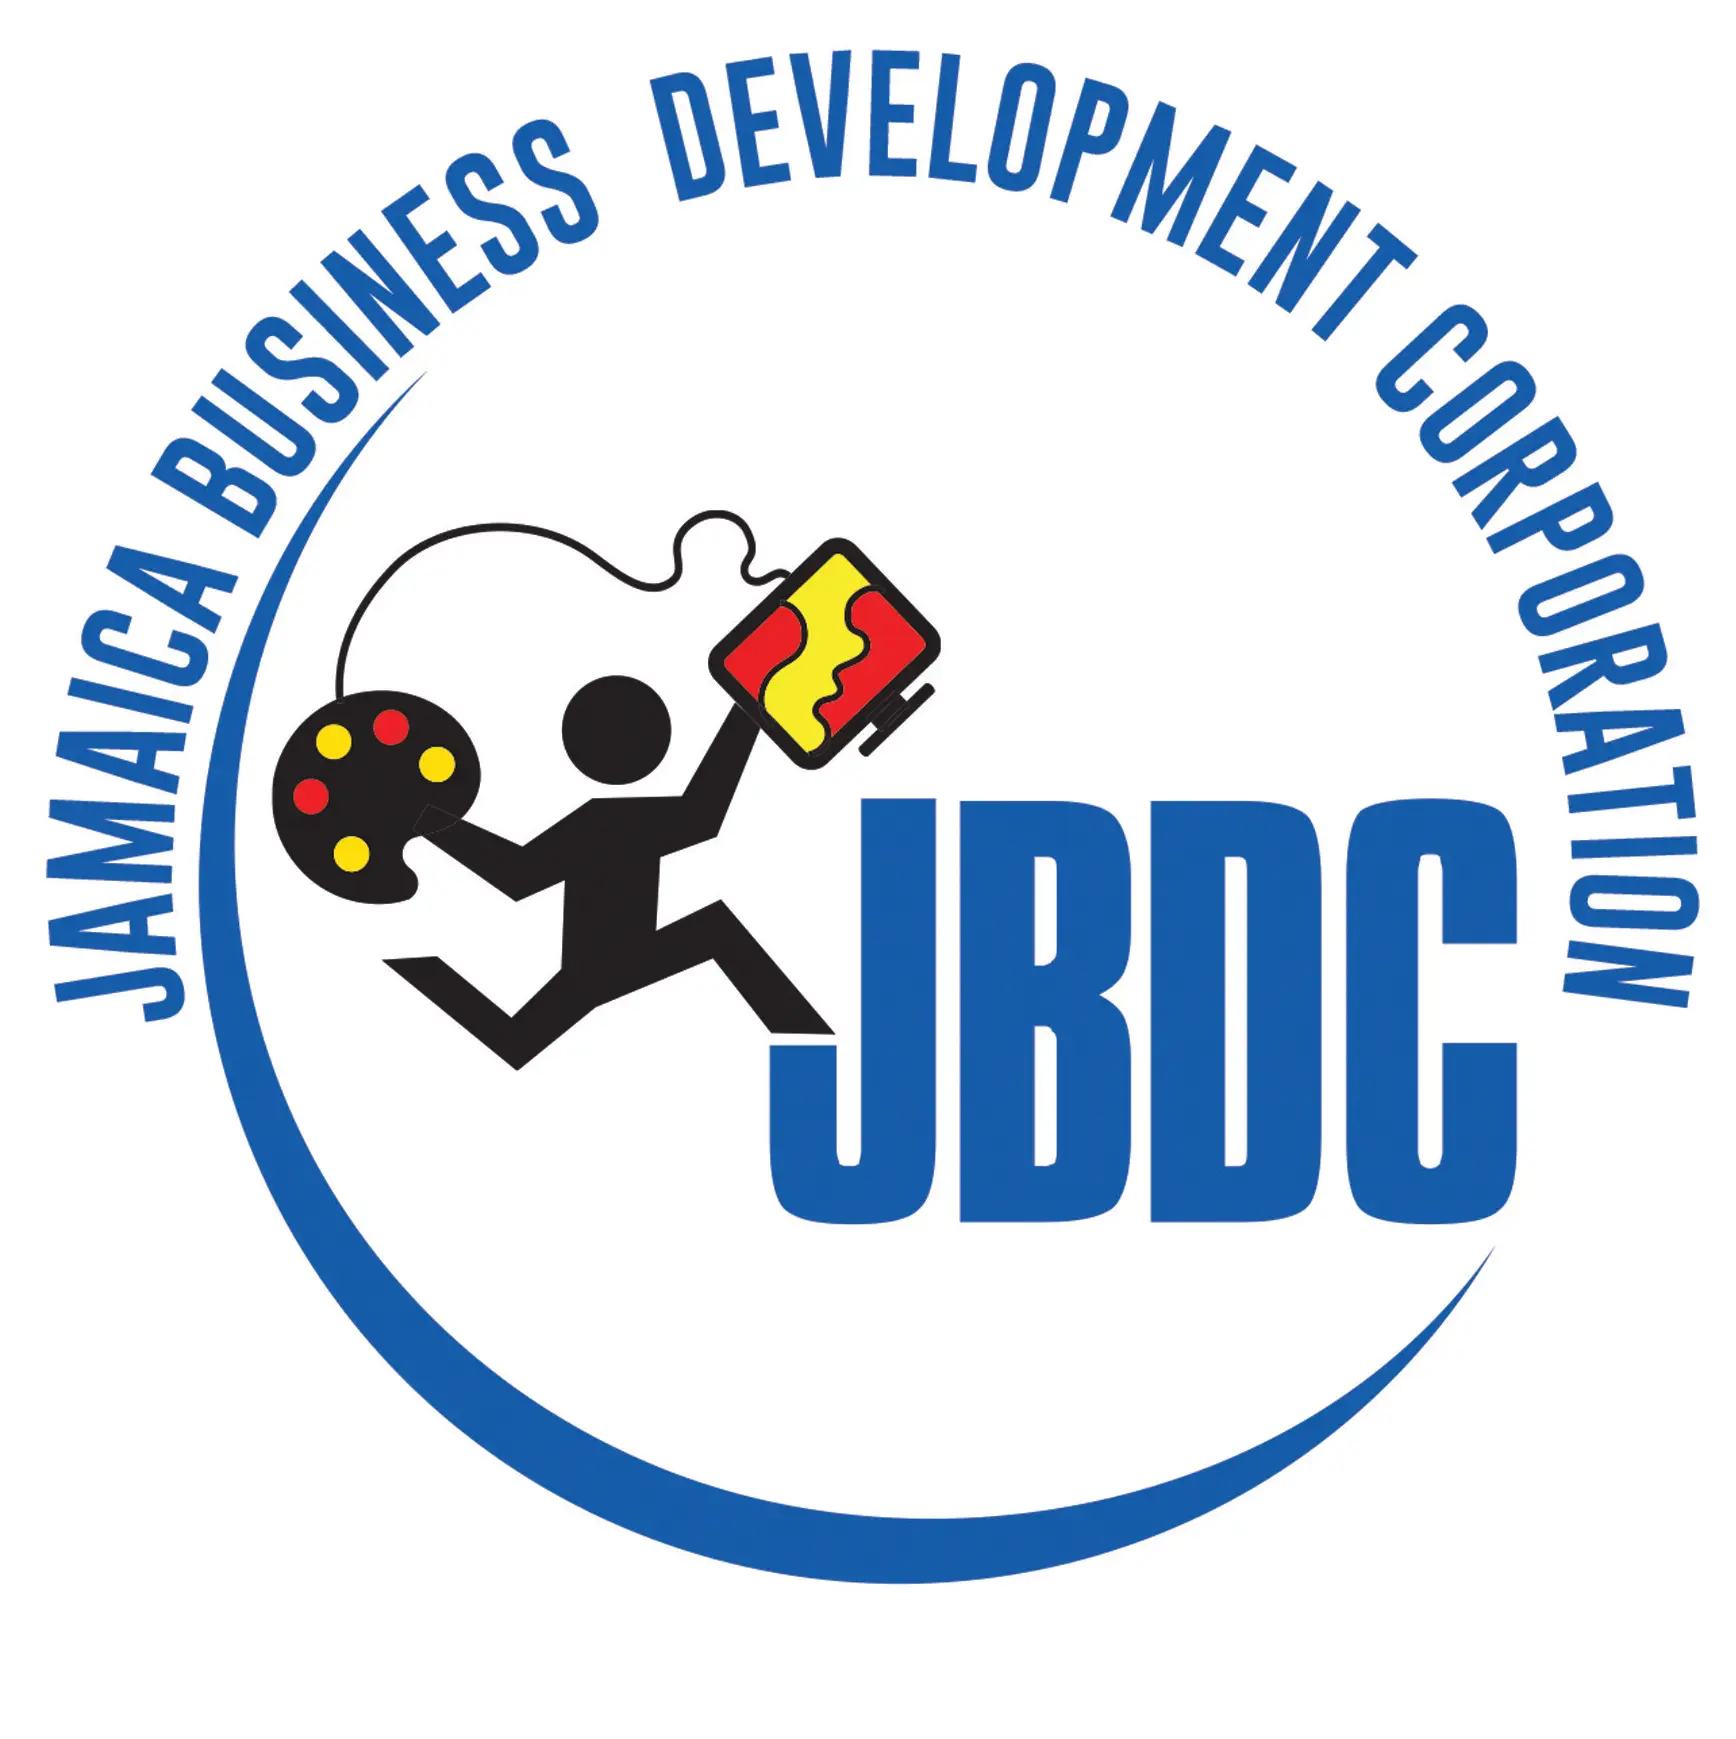 JBDC_rev_logo